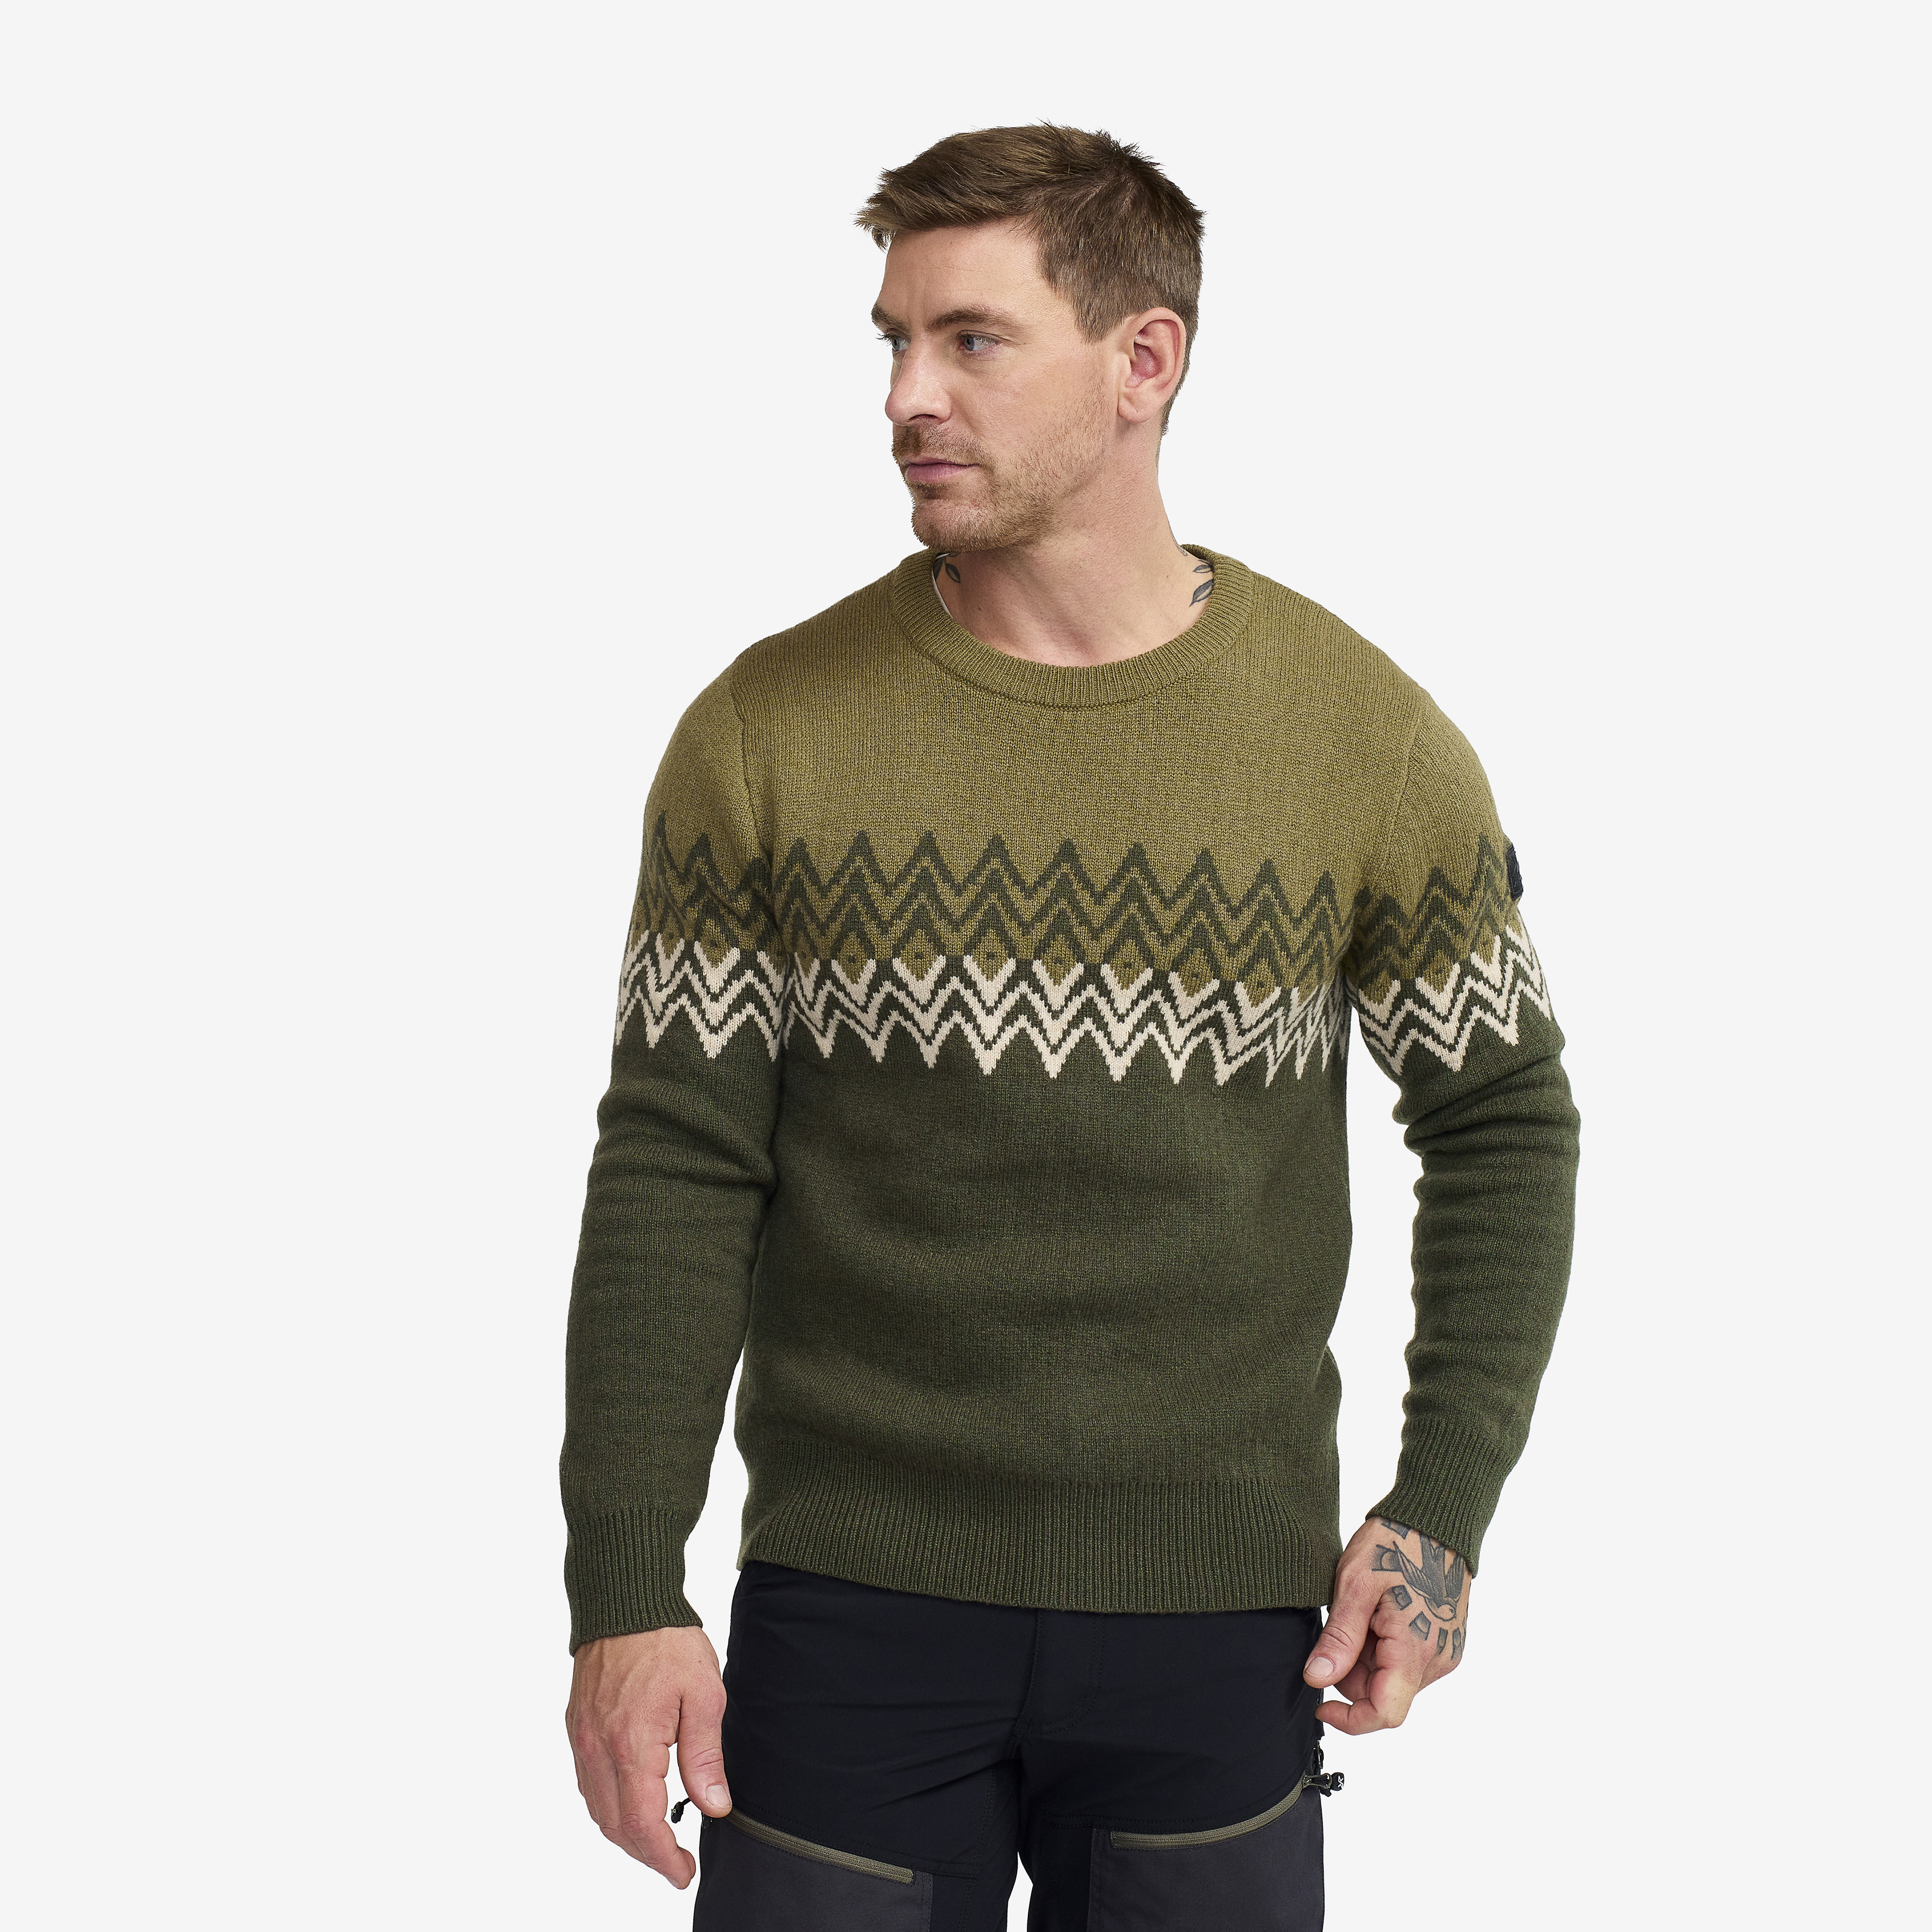 Heavy Knit Sweater - Herr - Forest Night, Storlek:L - Herr > Tröjor > Skjortor & Långärmade Tröjor